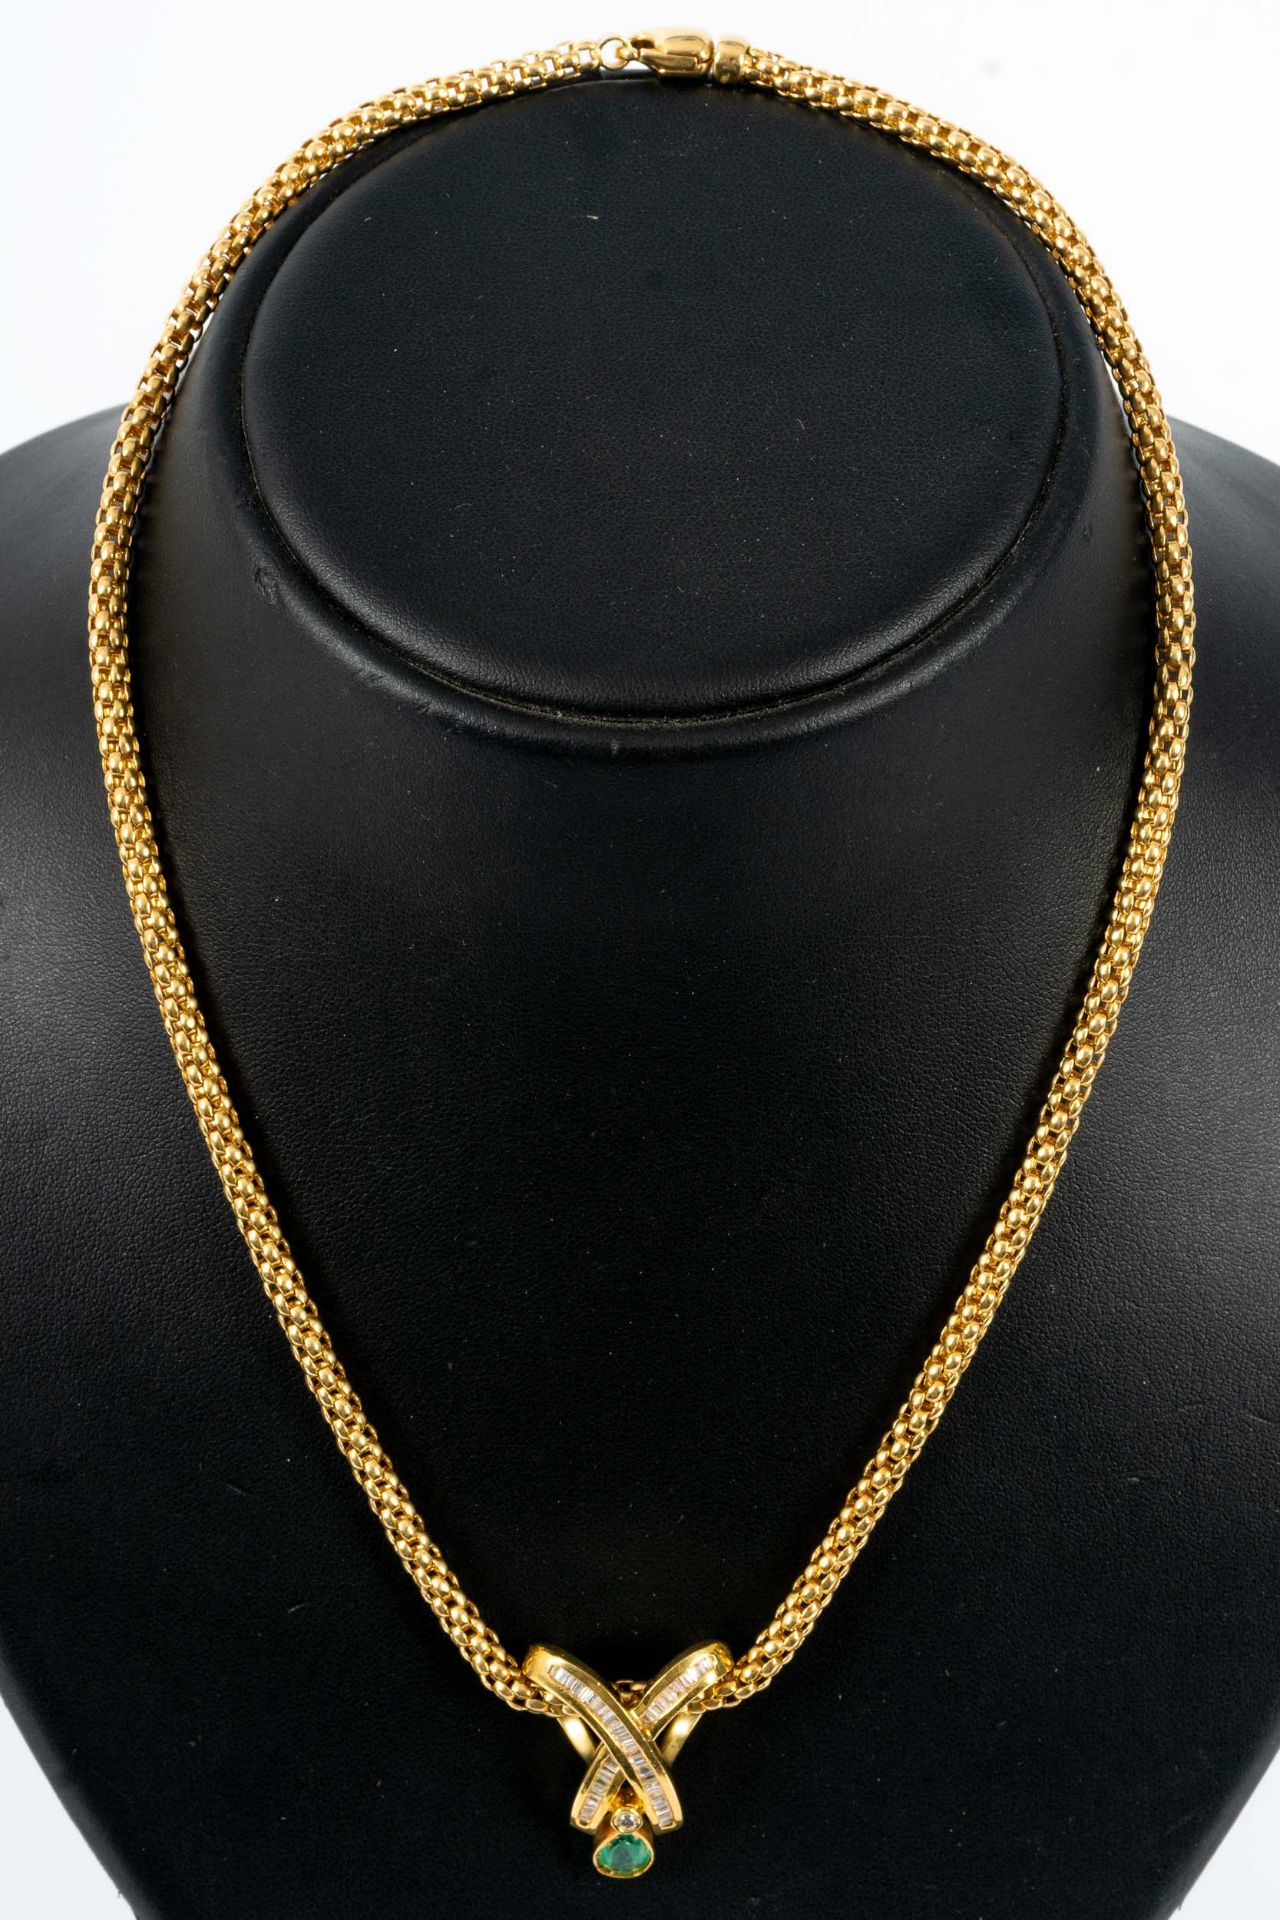 Prächtiges Smaragd-Brillant-Collier, bewegliche, ca. 46 cm lange tauförmige Halskette mit einer Bre - Bild 3 aus 10